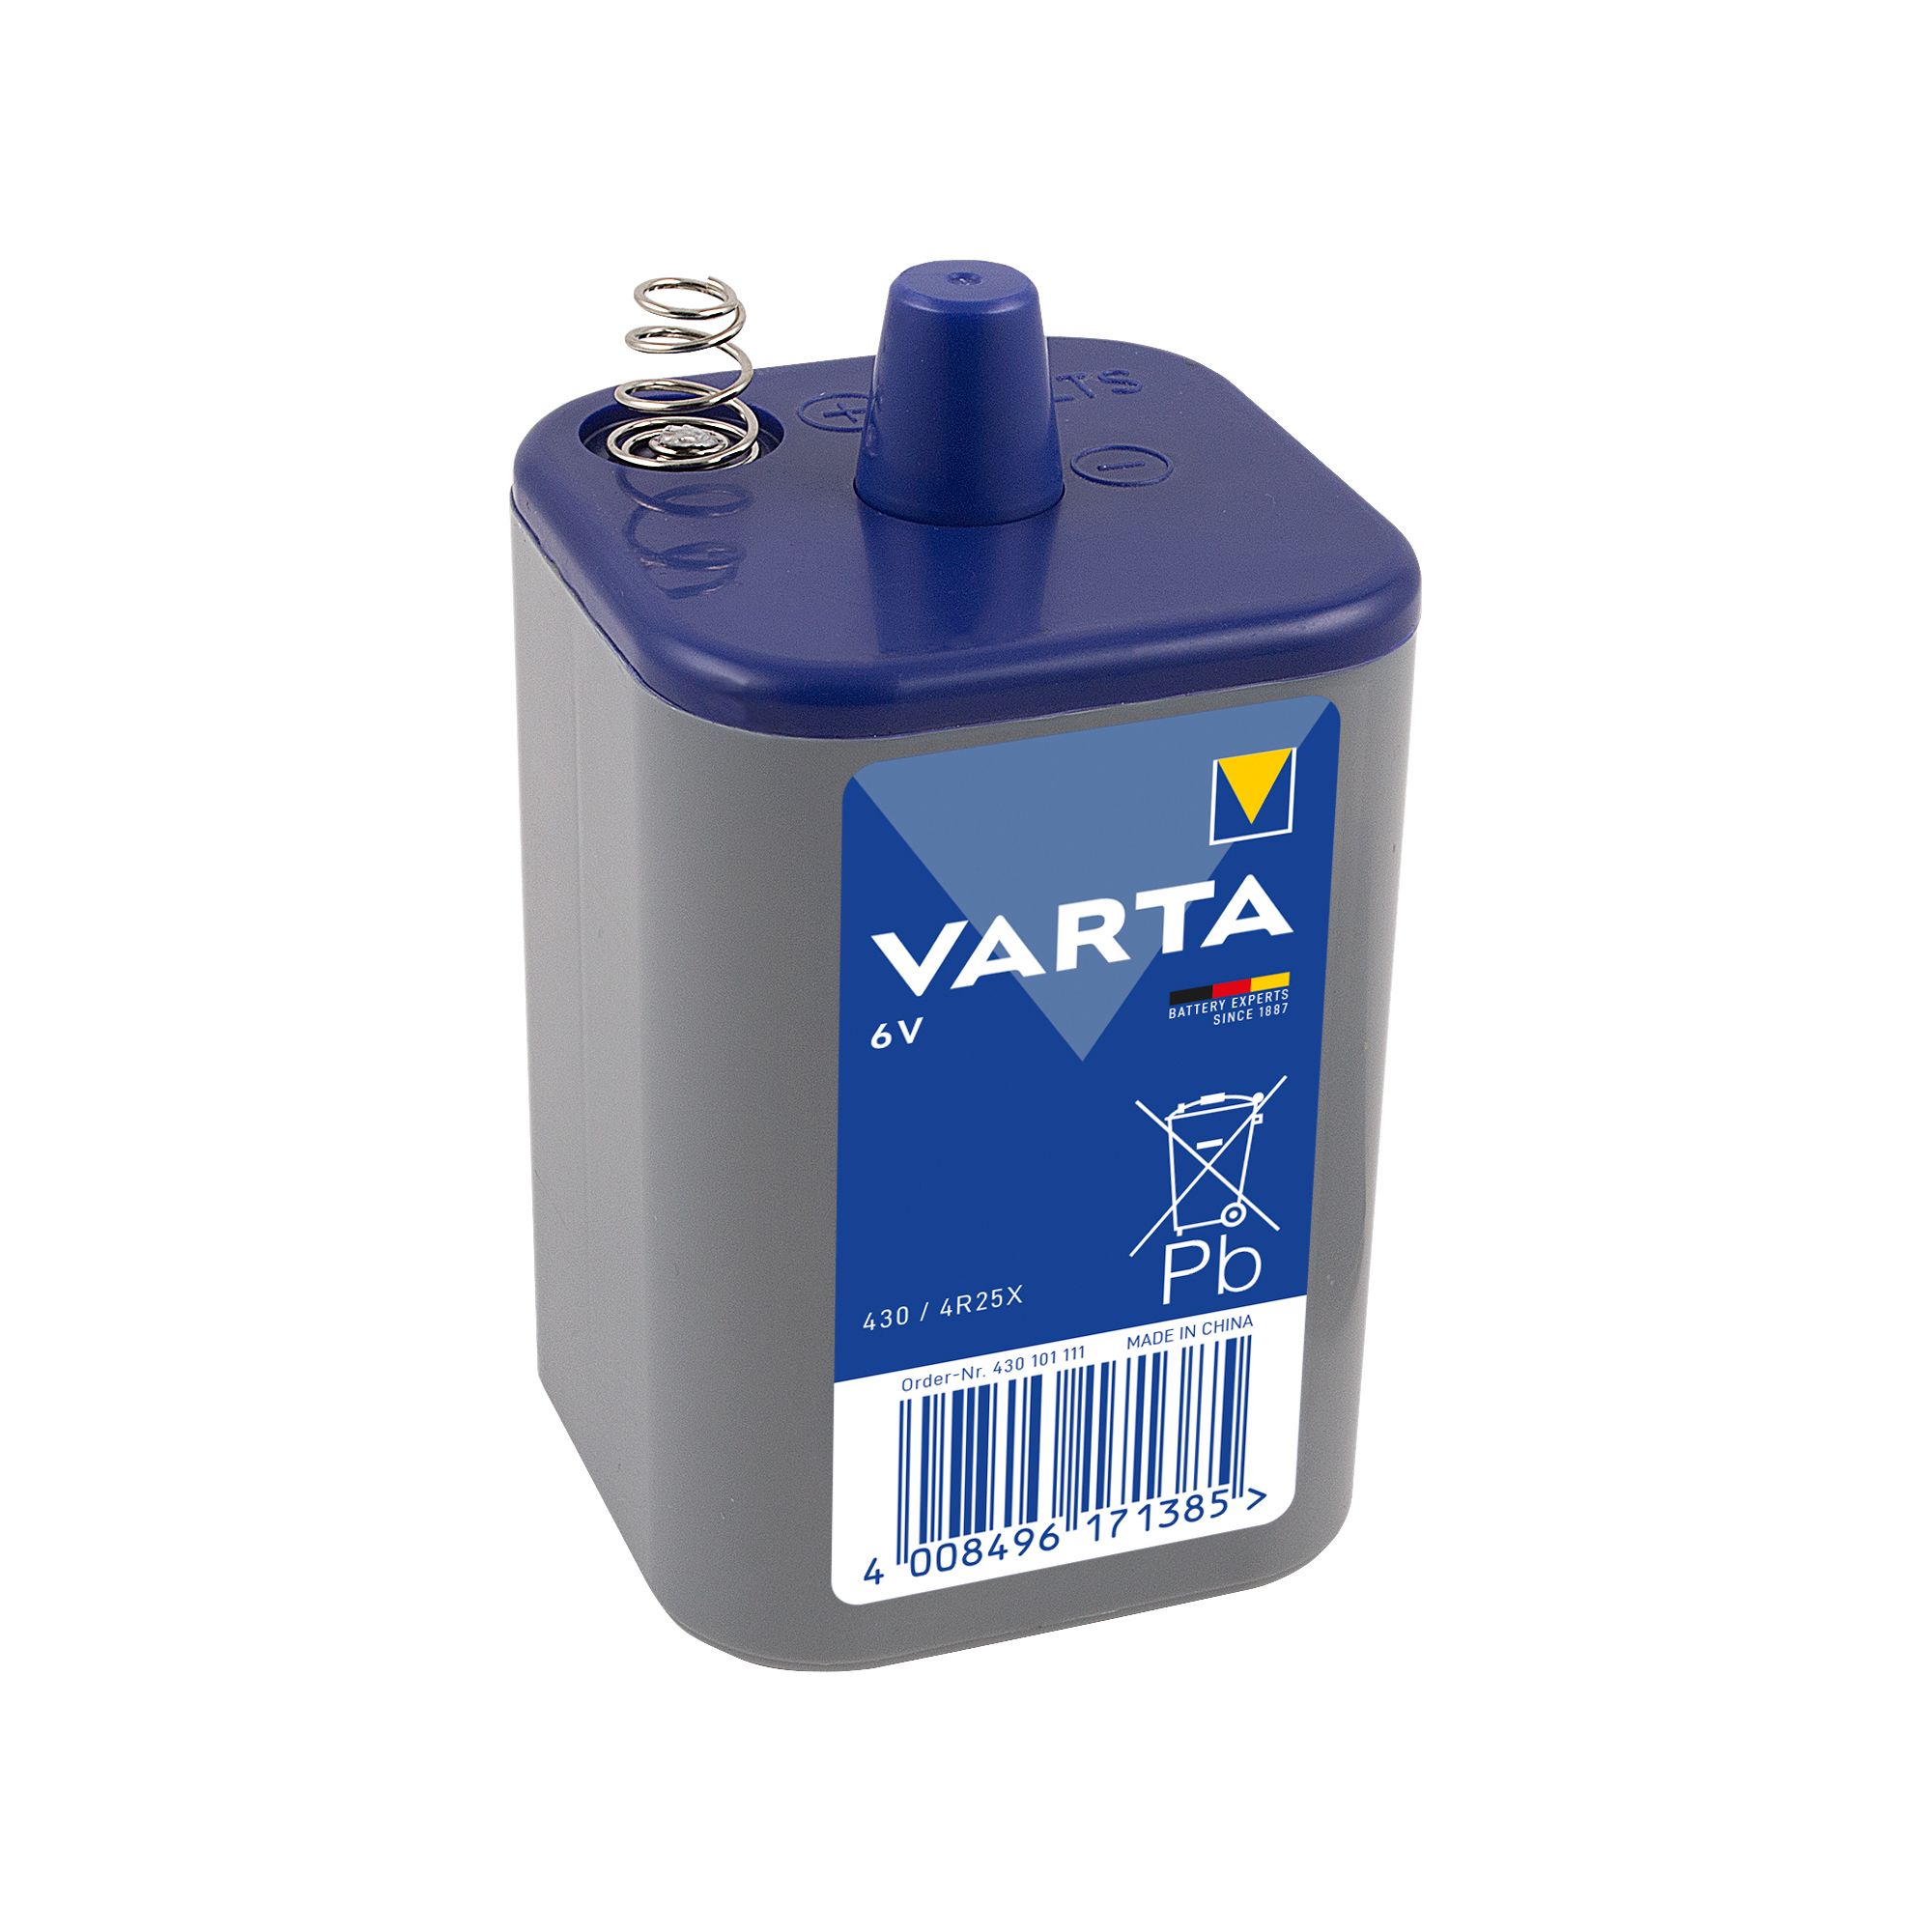 Varta Zinc carbon 6V 4R25 Battery